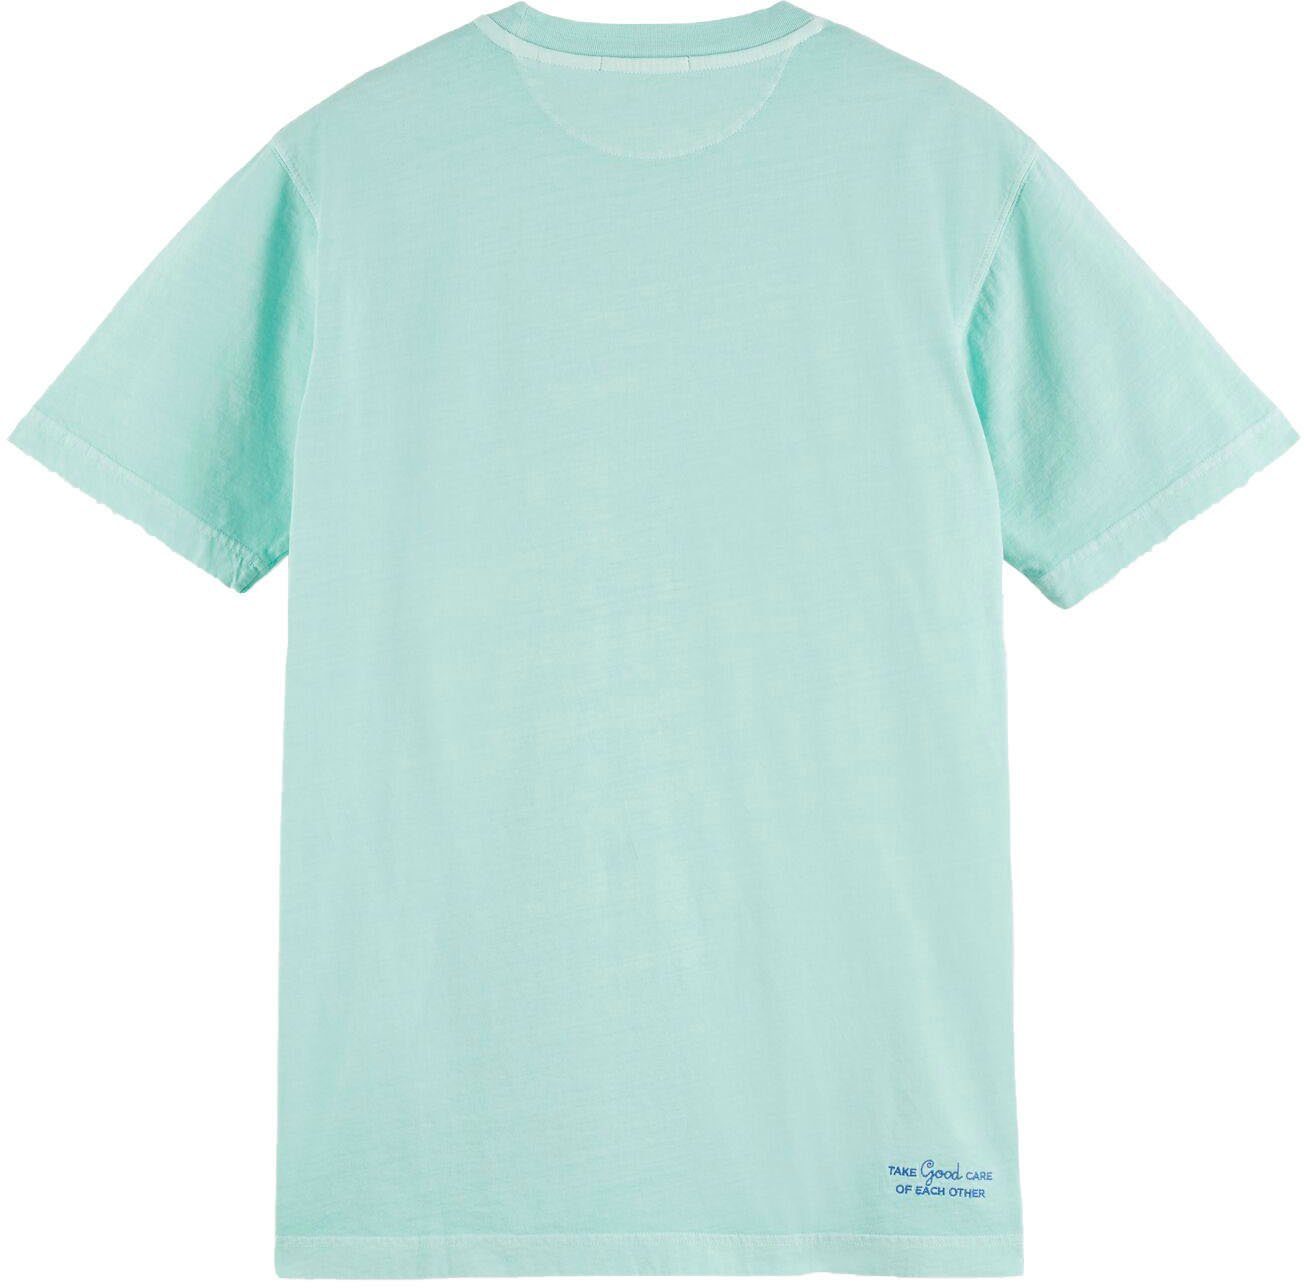 Scotch & Soda logo Bay regular-fit Brust T-shirt auf Rundhalsshirt kleiner Garment-dye der mit Logo-Stickerei